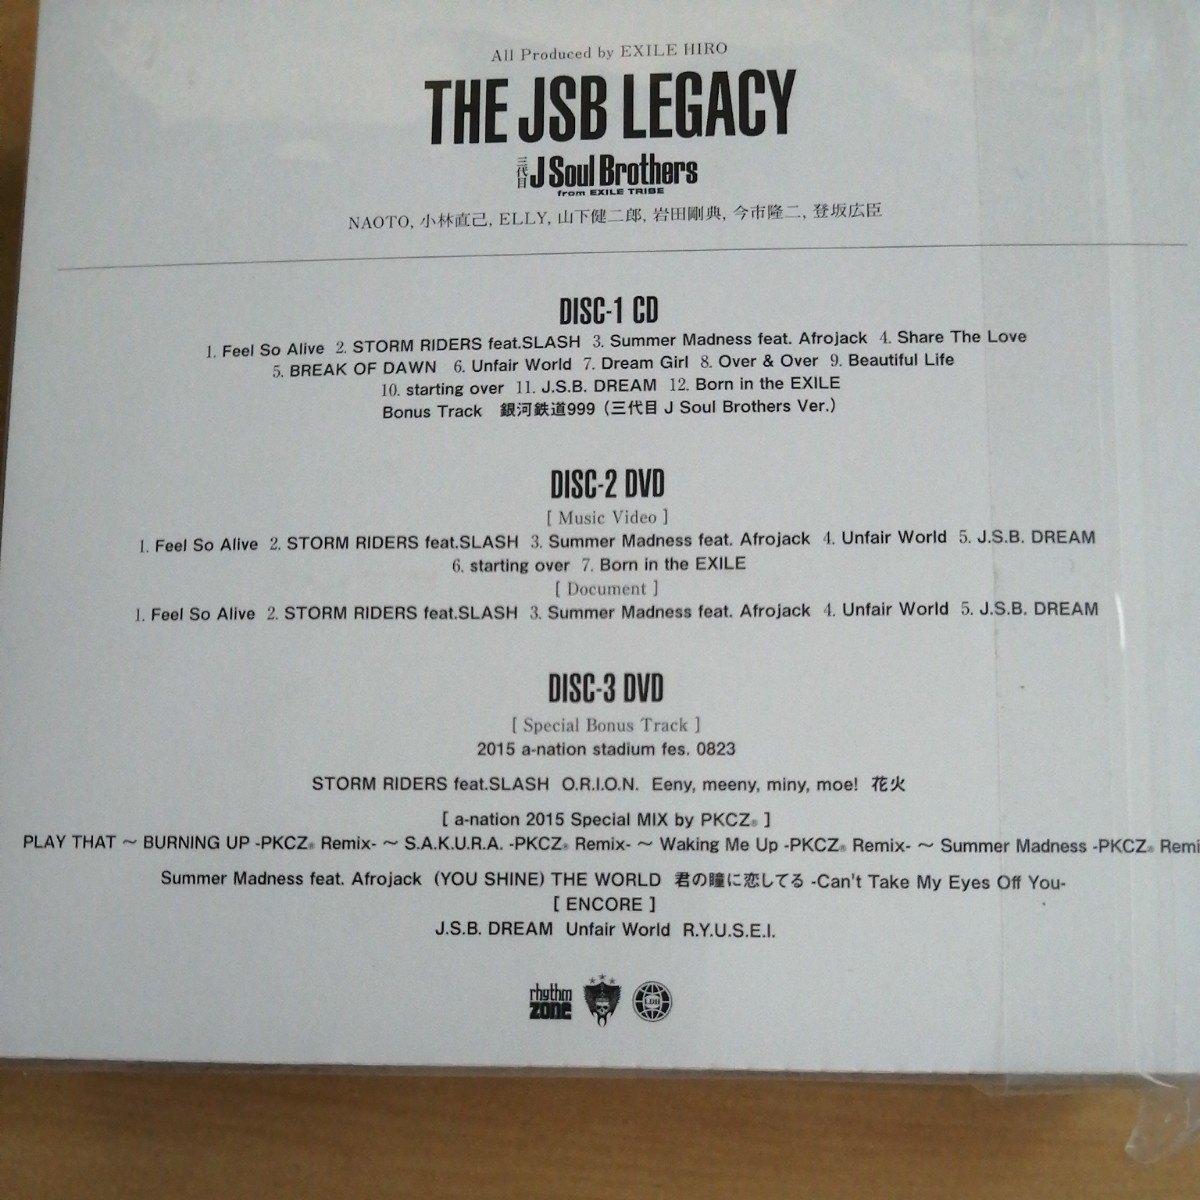 新品未開封■THE JSB LEGACY(CD+DVD2枚組) 初回生産限定盤